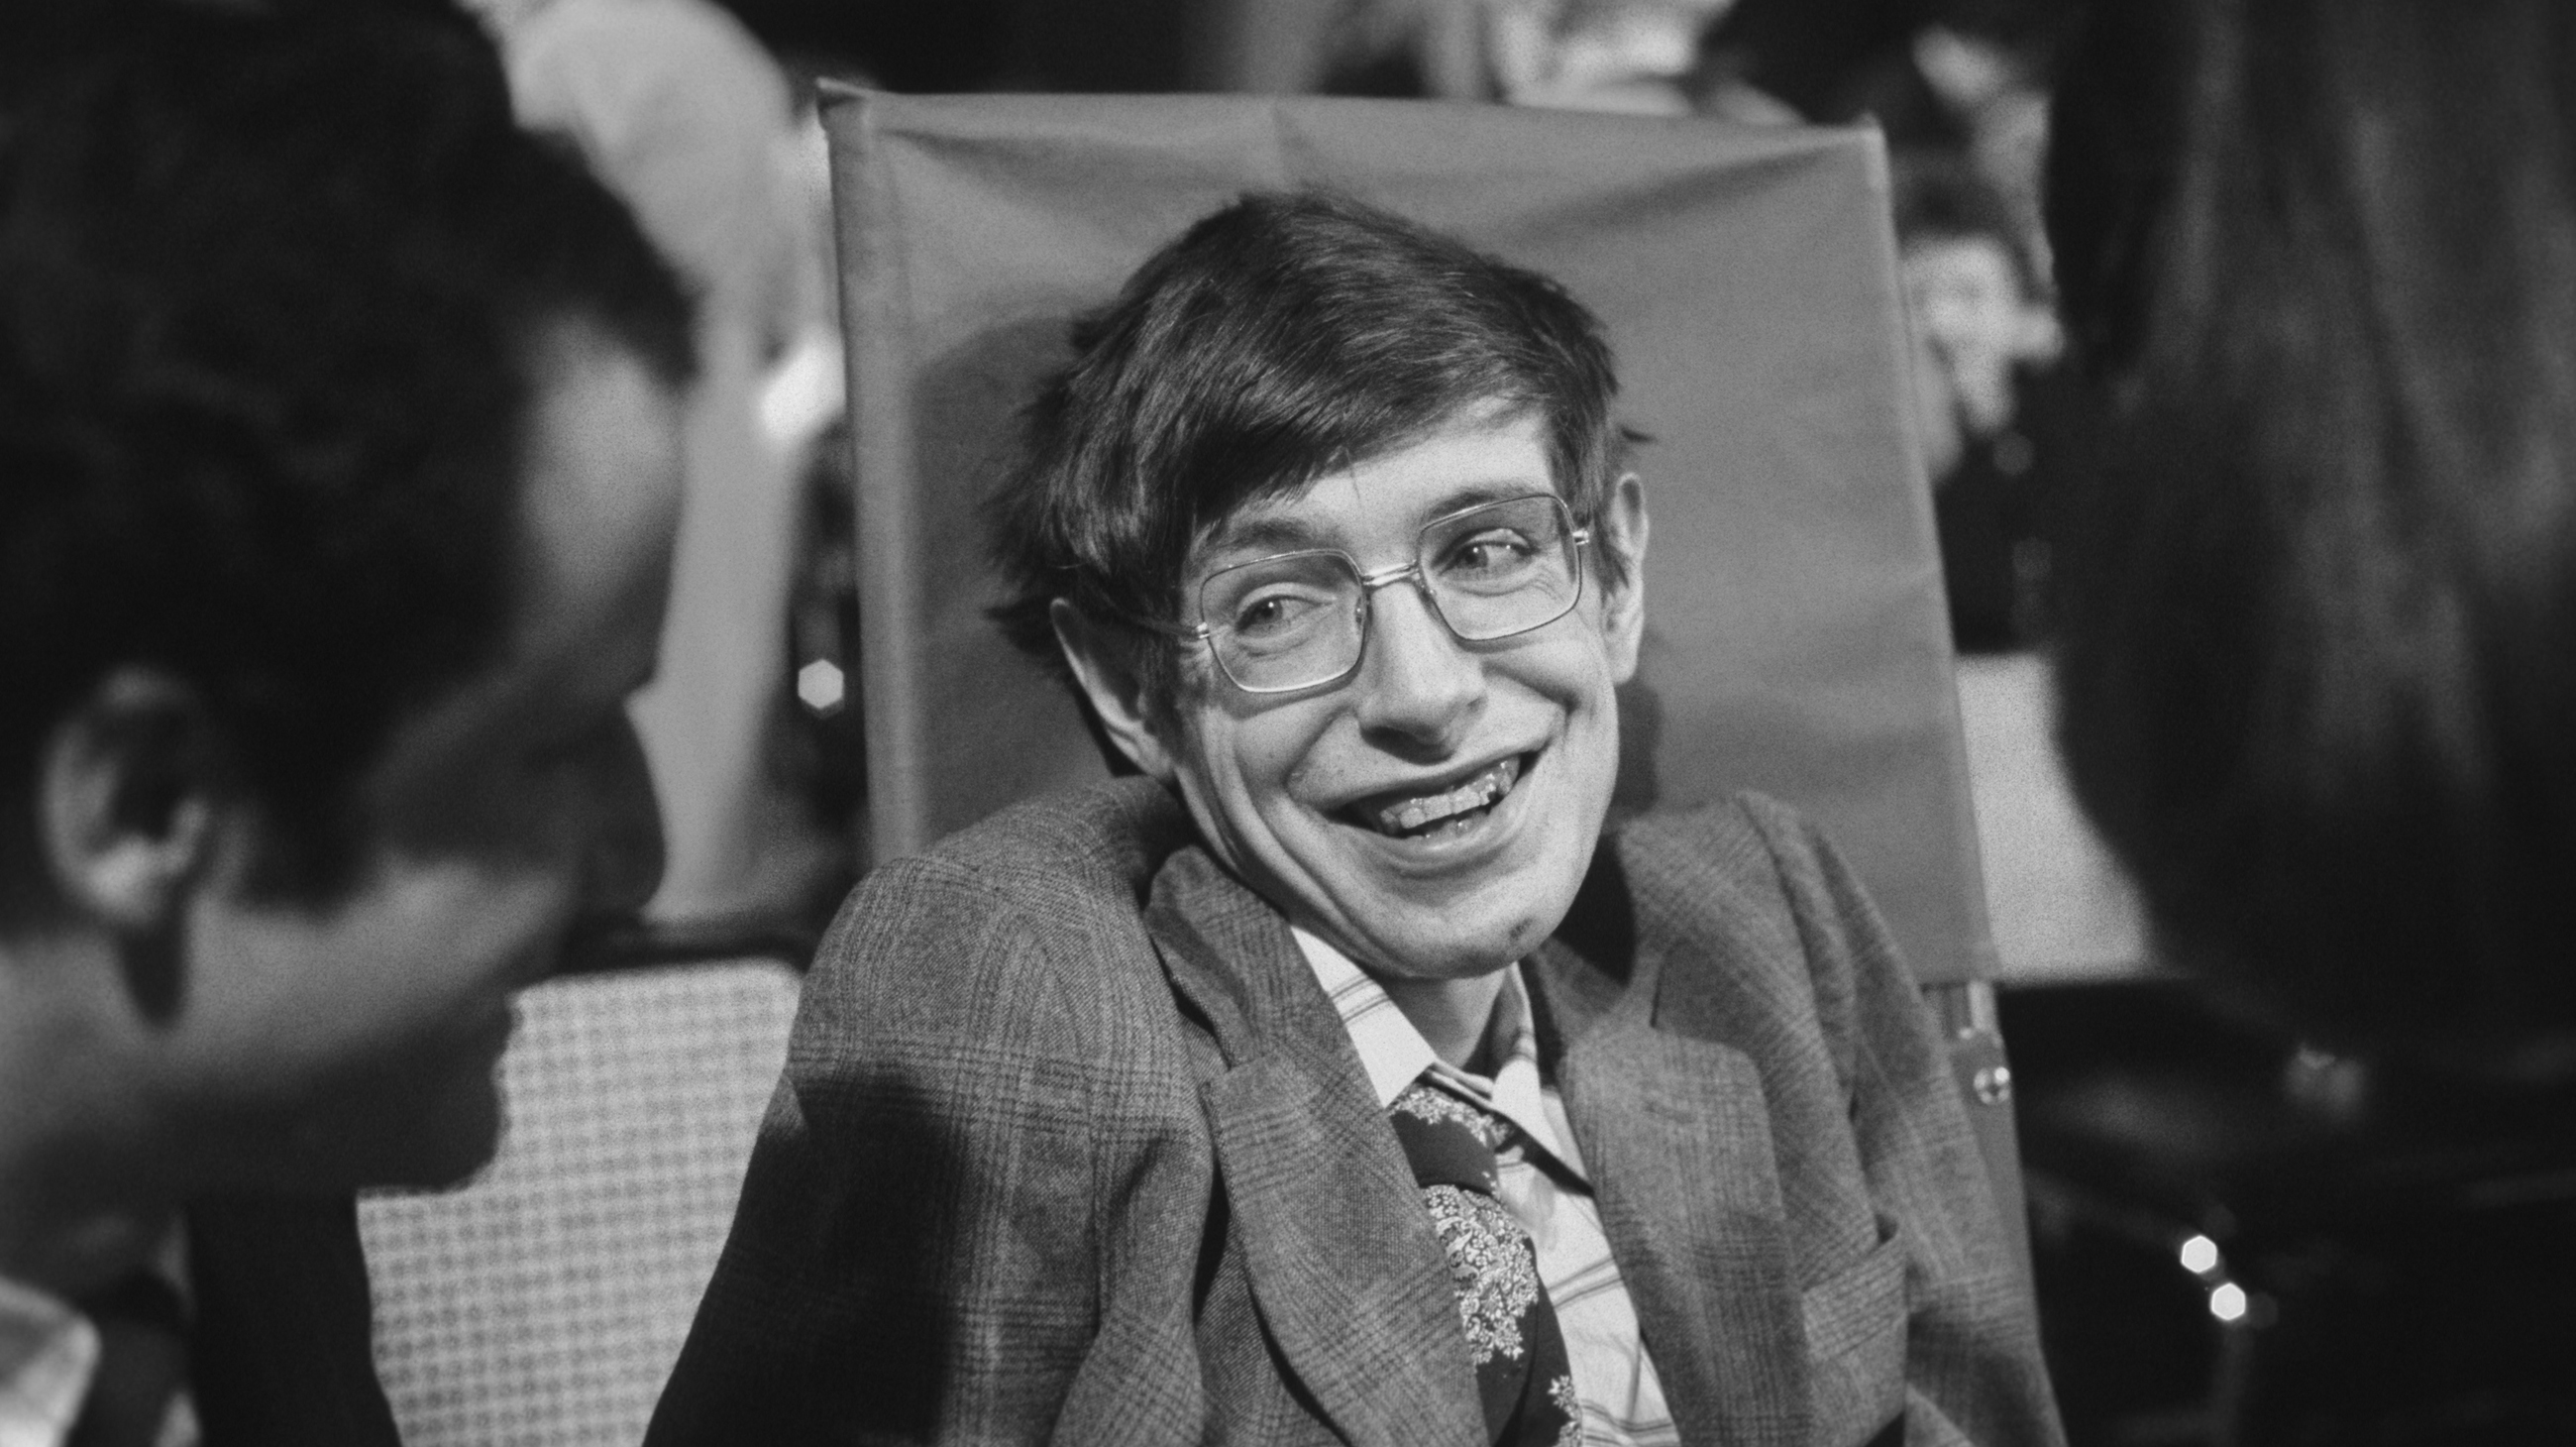 Stephen Hawking'in eşyaları açık artırma ile satılacak